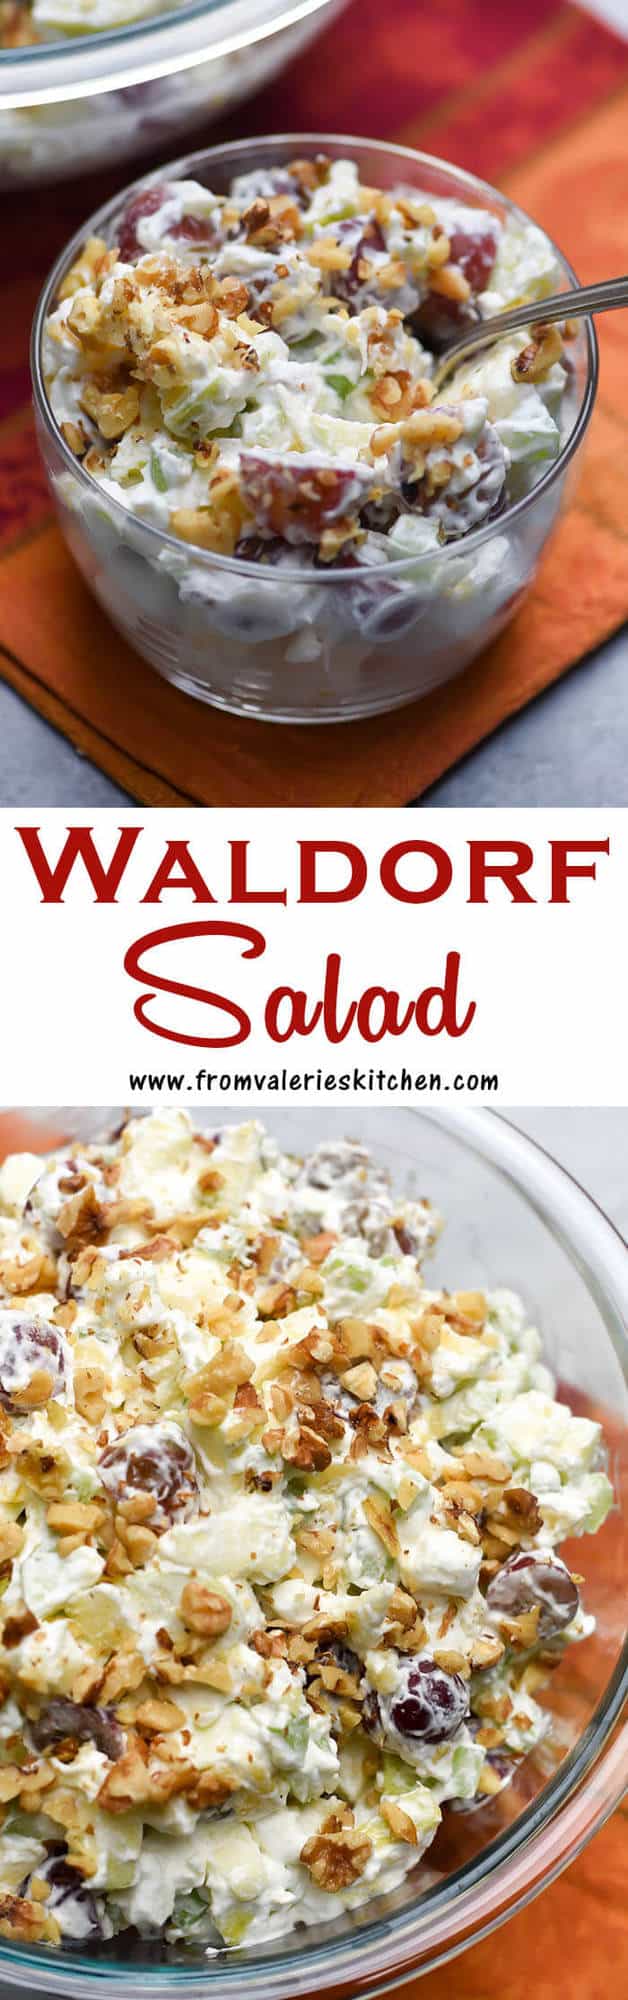 kahden kuvan pystysuora kollaasi Waldorfin salaatista tekstipäällyksellä.